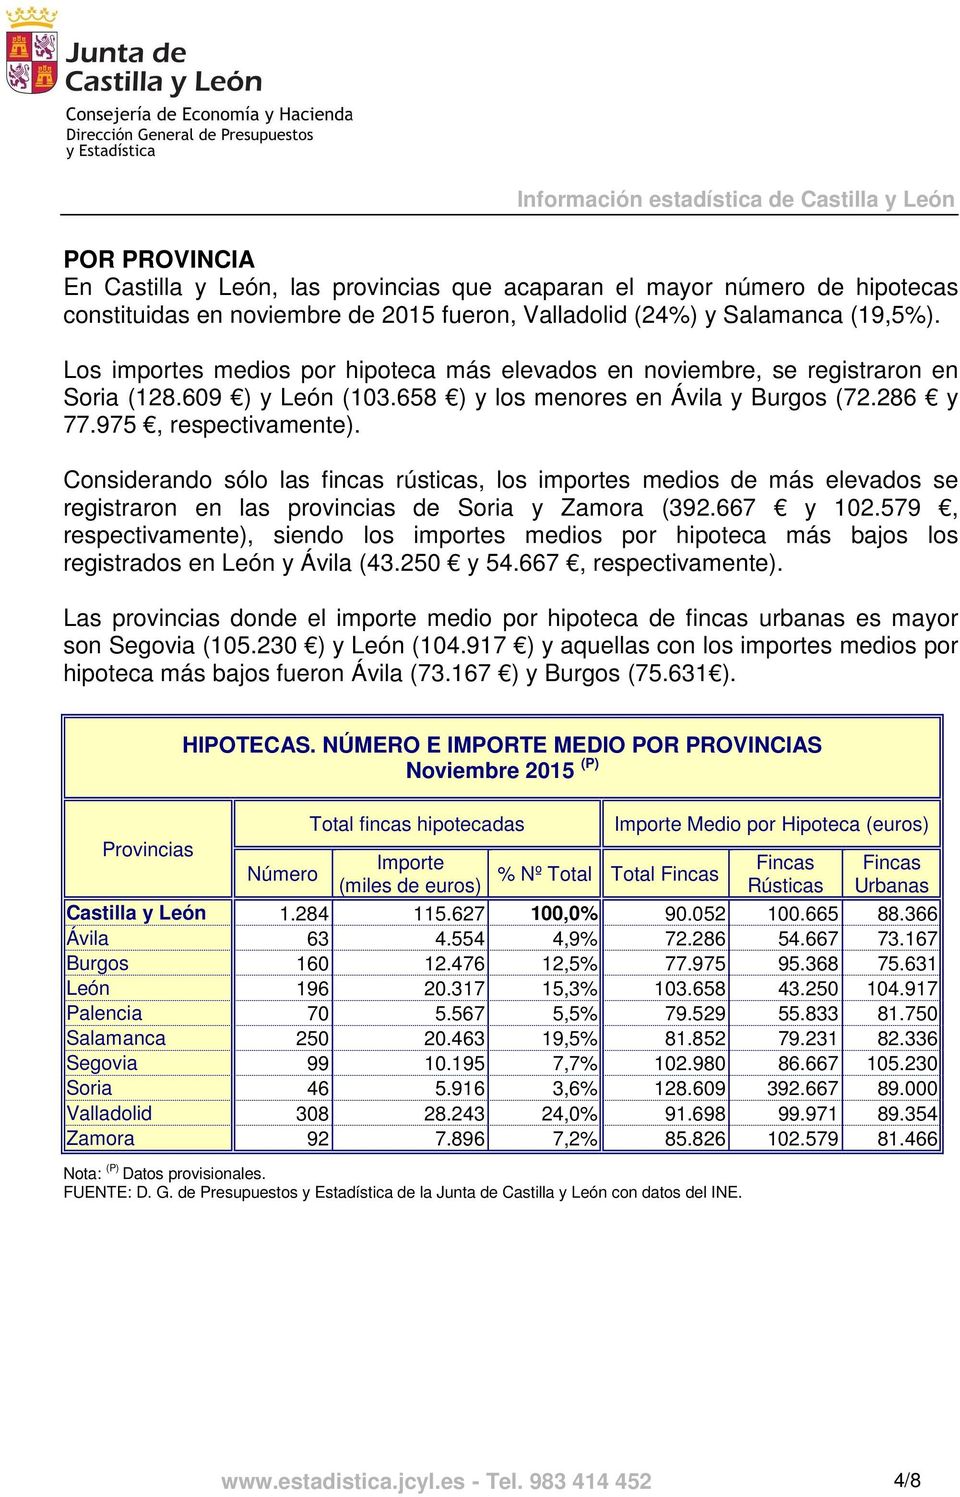 Considerando sólo las fincas rústicas, los importes medios de más elevados se registraron en las provincias de Soria y Zamora (392.667 y 102.